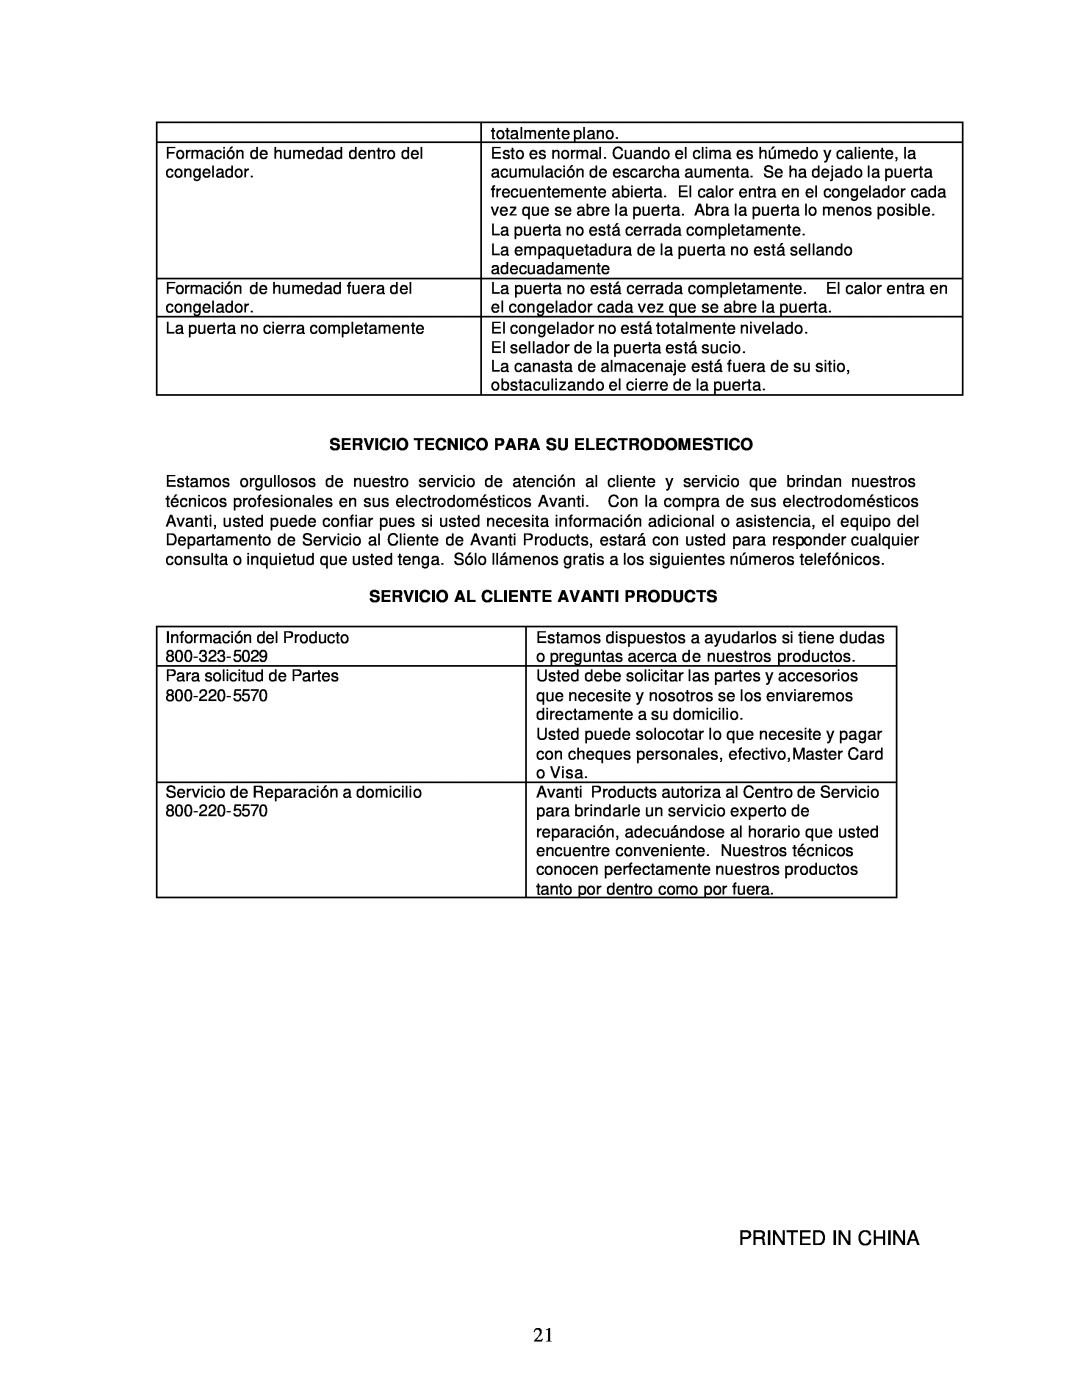 Avanti CF98PSS instruction manual Servicio Tecnico Para Su Electrodomestico, Servicio Al Cliente Avanti Products 